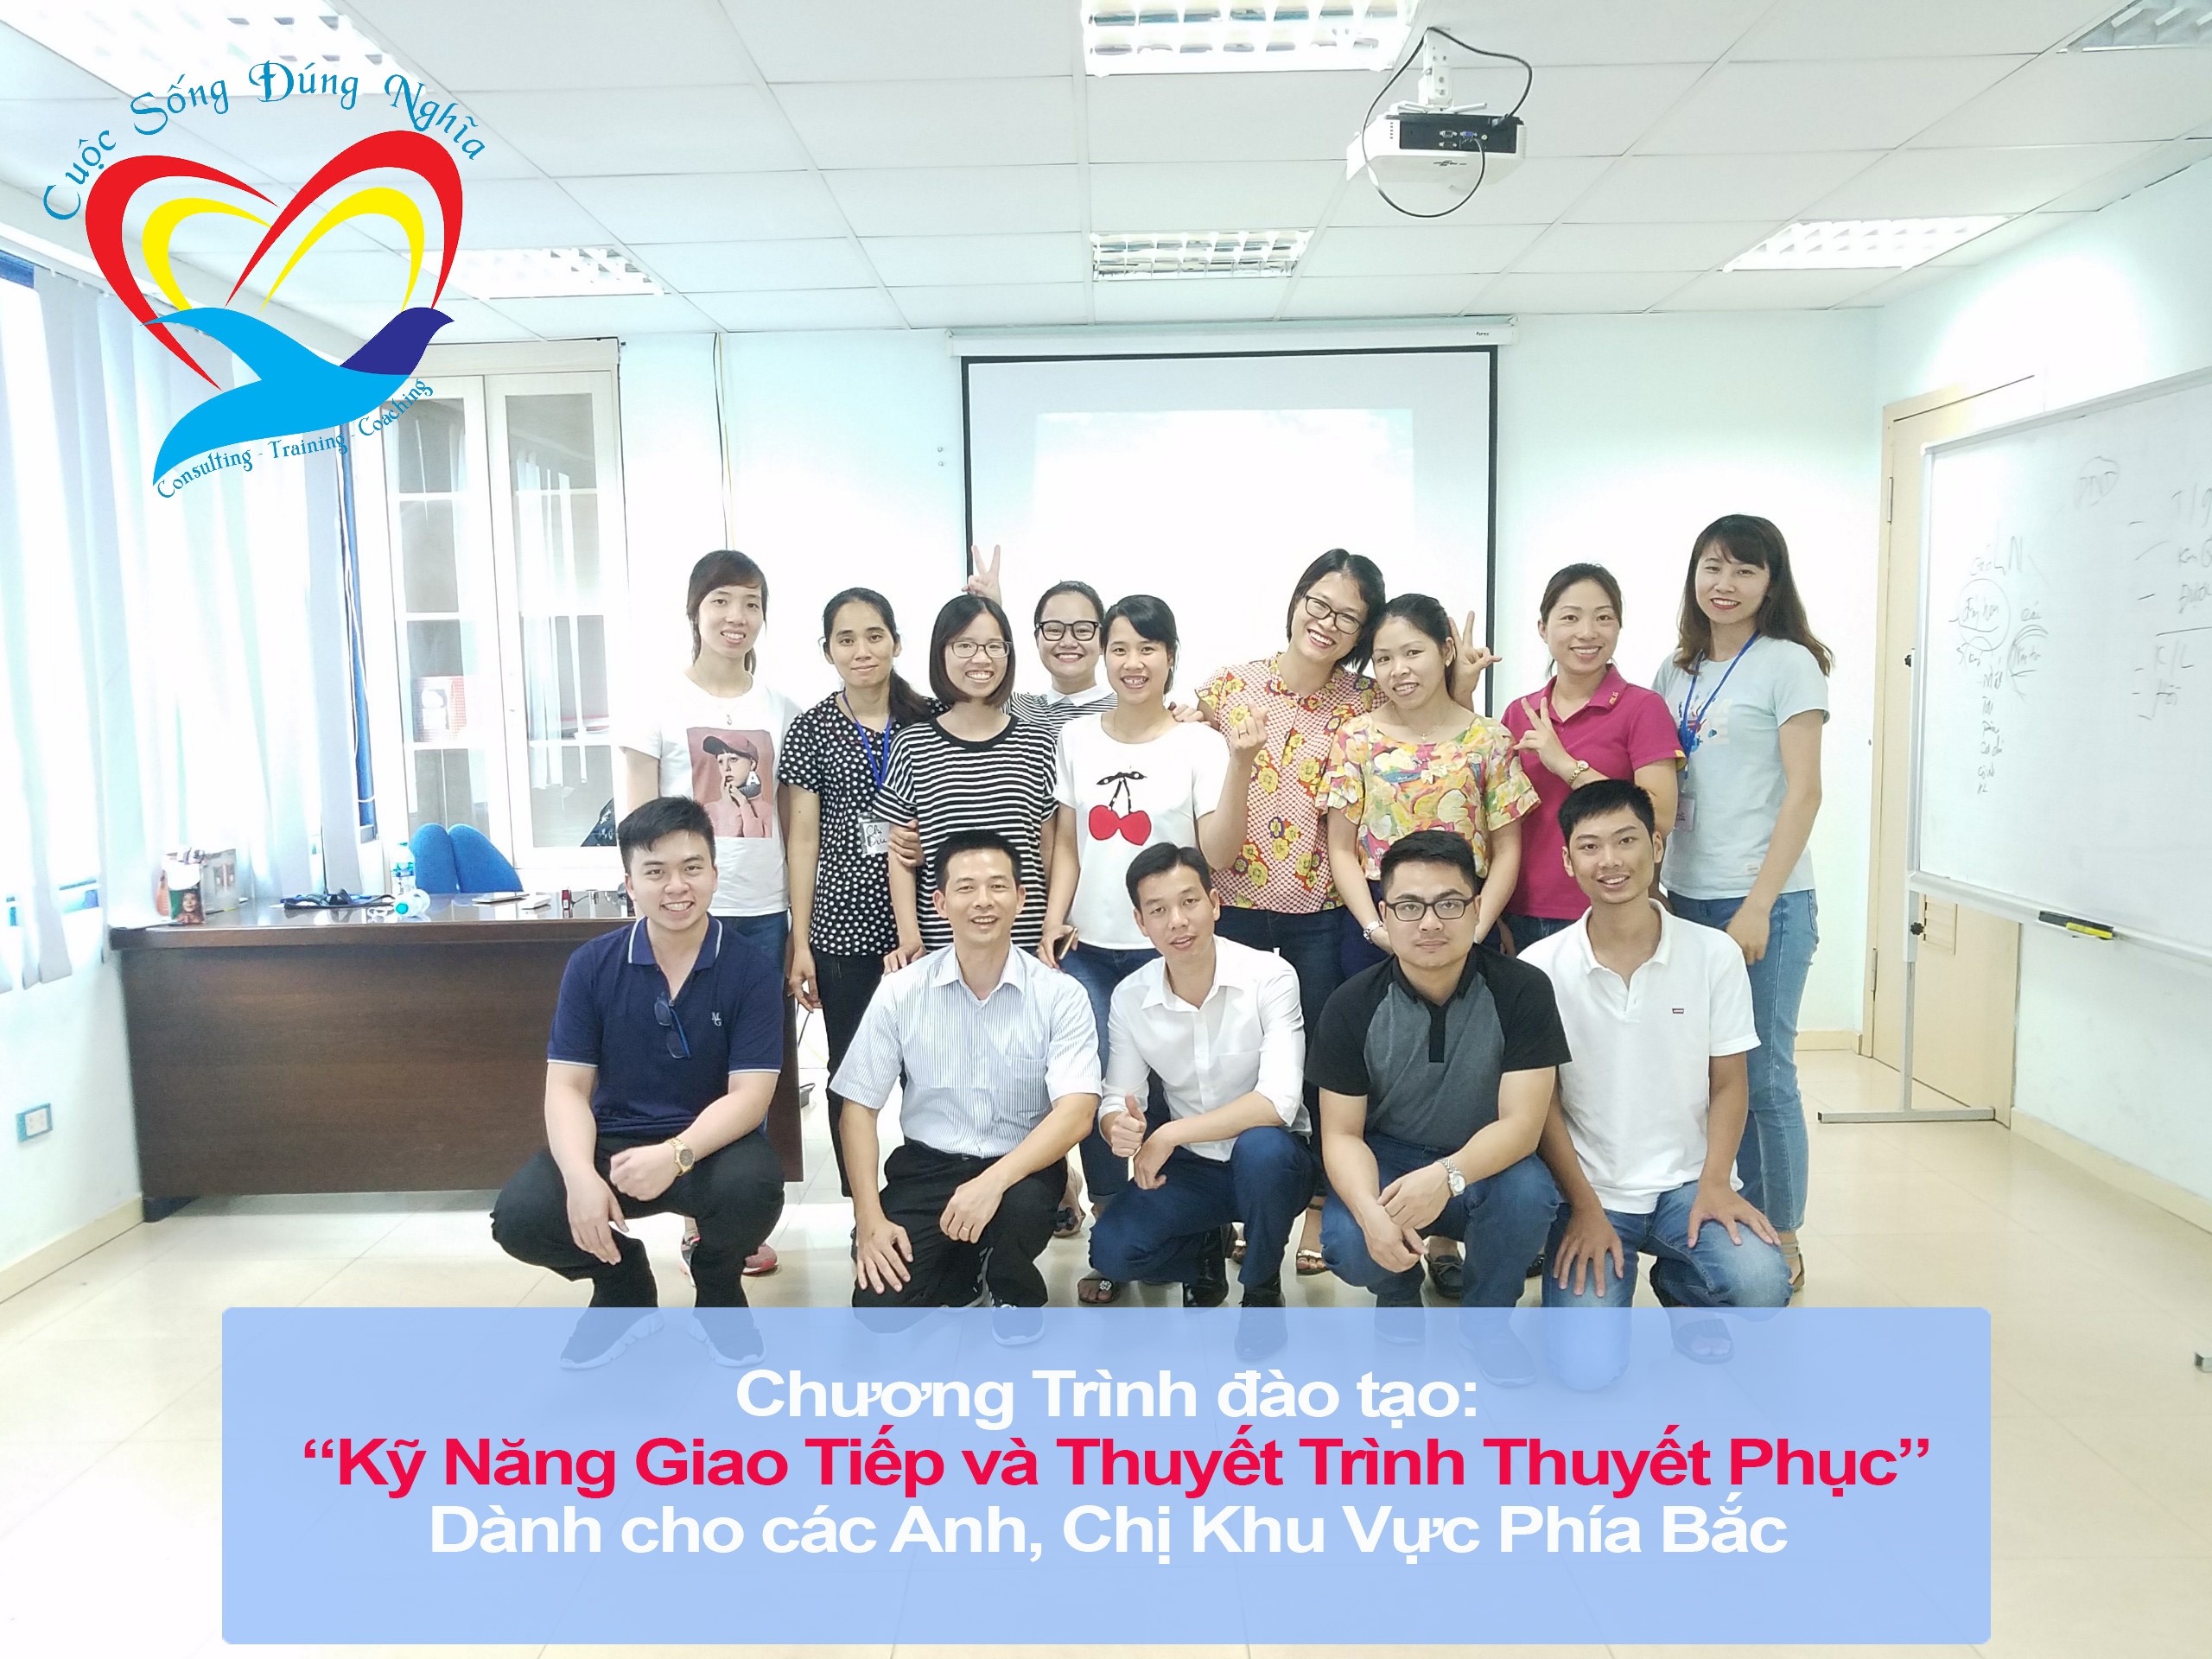 Đào tạo public: “Kỹ Năng Giao Tiếp và Thuyết Trình Thuyết Phục” tại Hà Nội